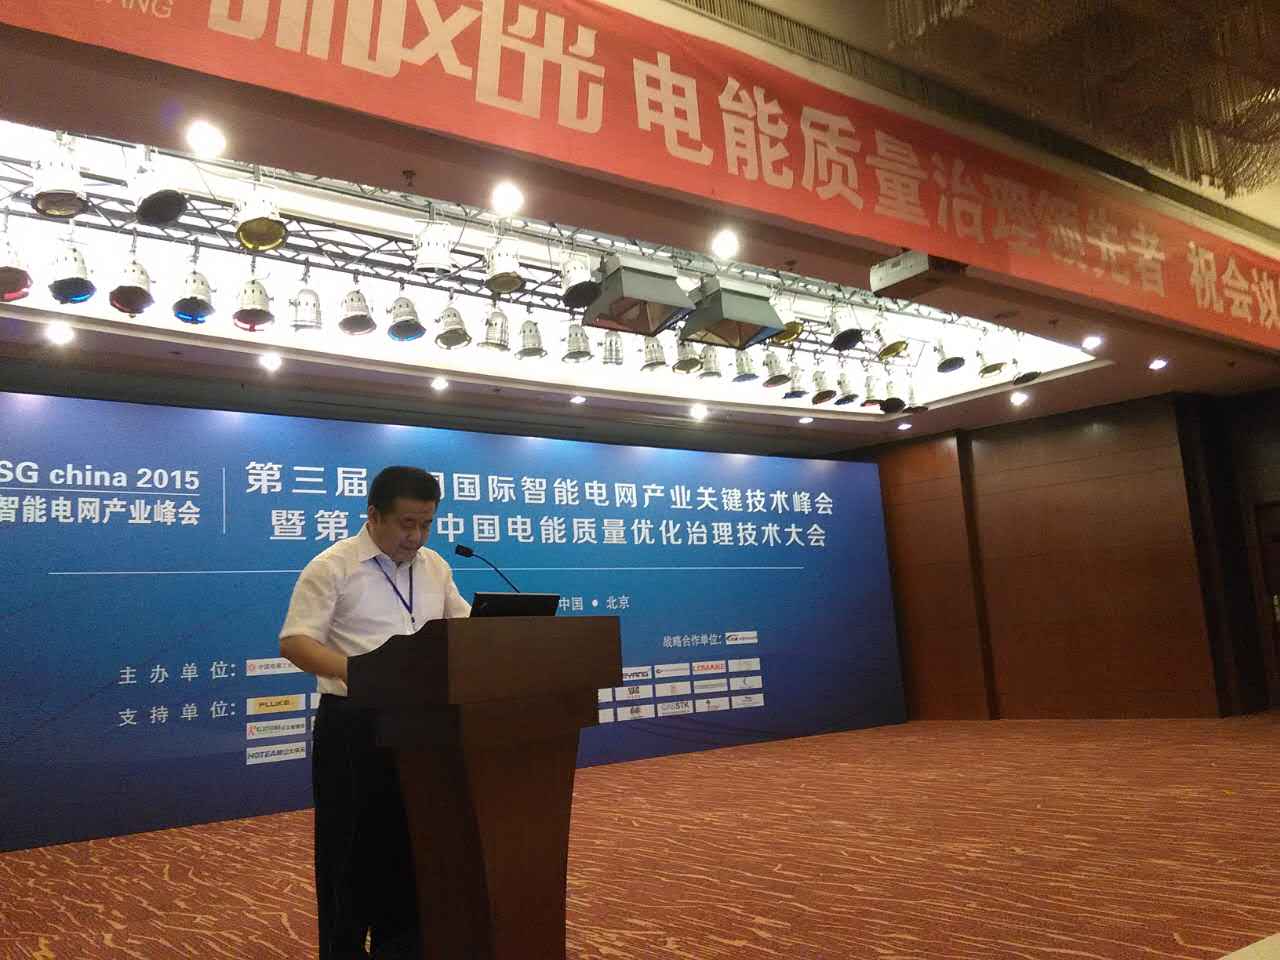 乐鱼真人娱乐
公司参加第三届中国国际智能电网产业关键技术峰会